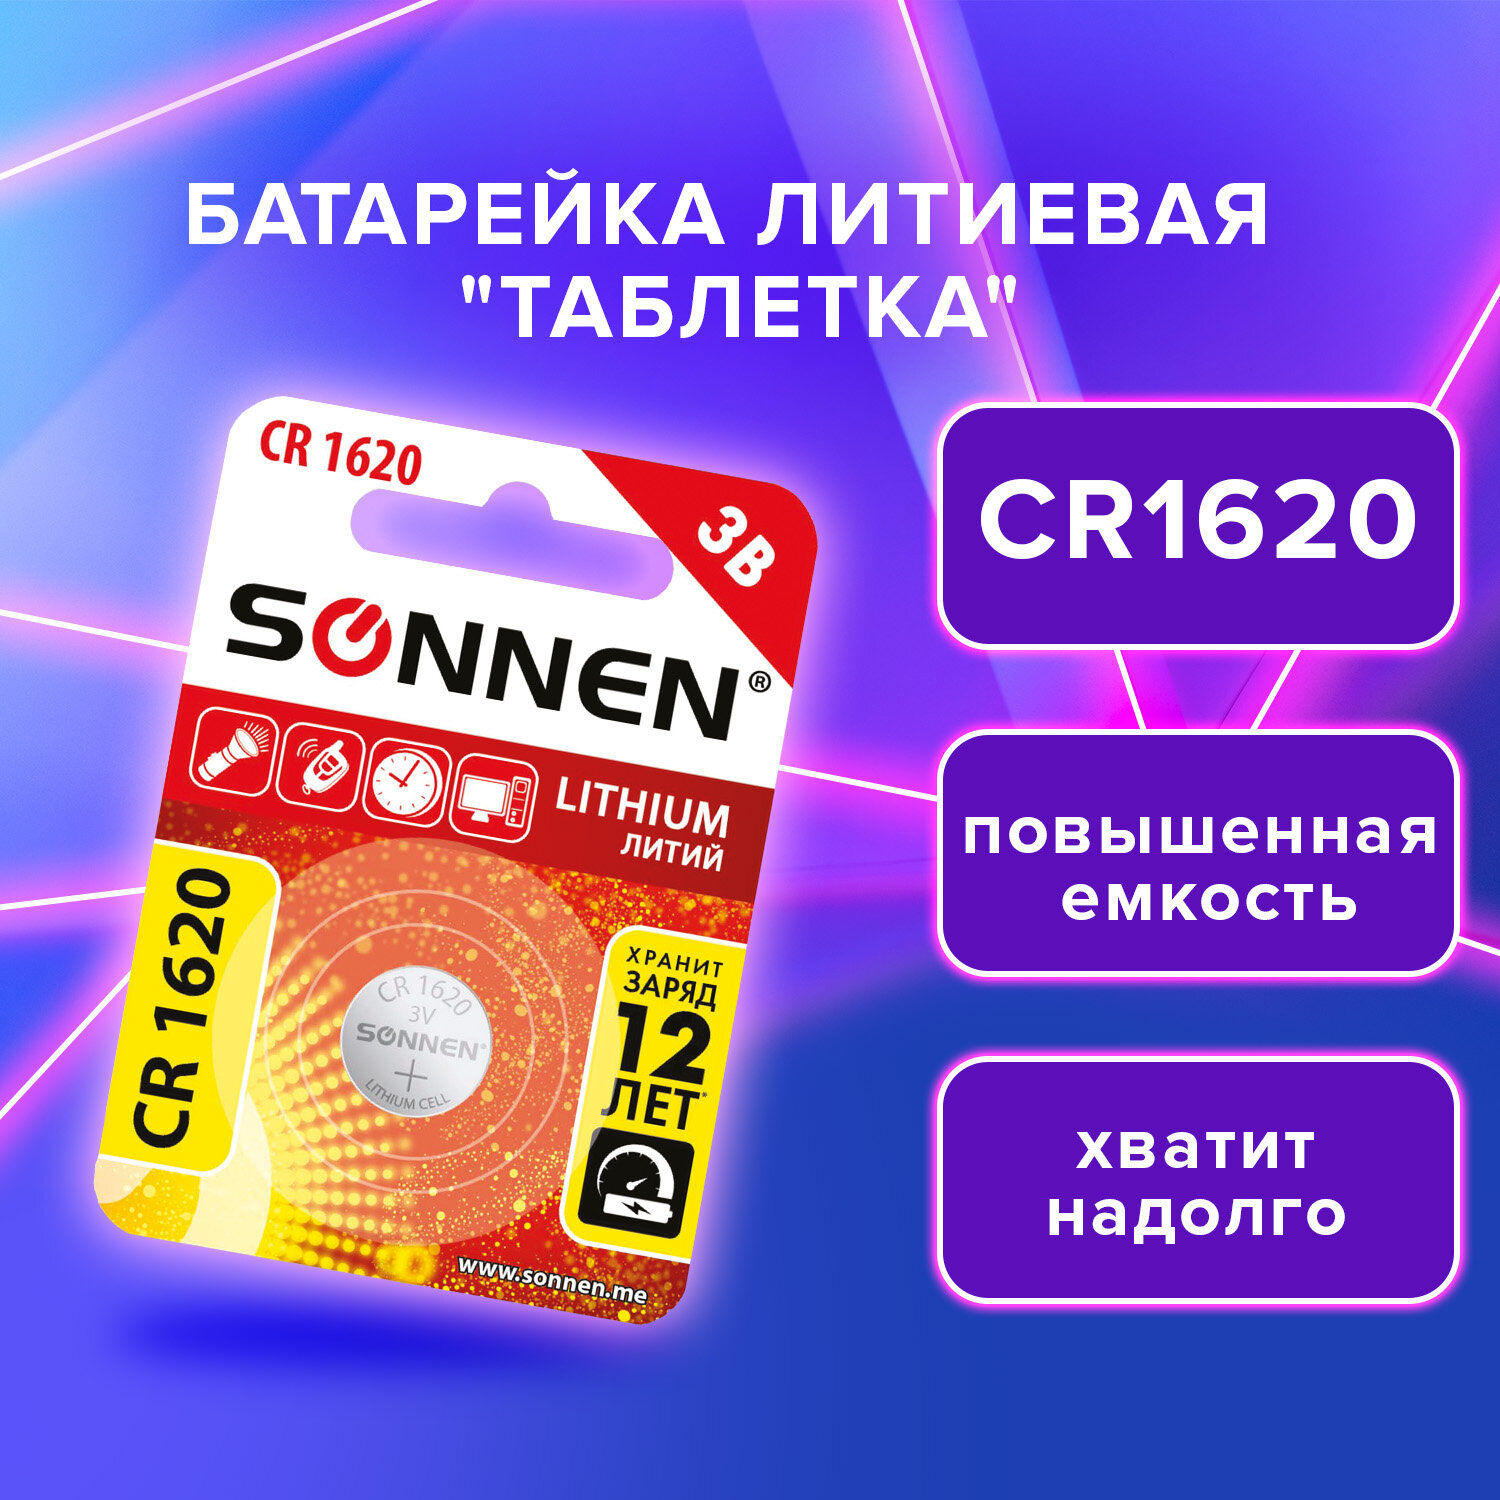 Литиевая батарейка SONNEN Lithium, 455599,CR1620 круглая дисковая 3V 1 штука